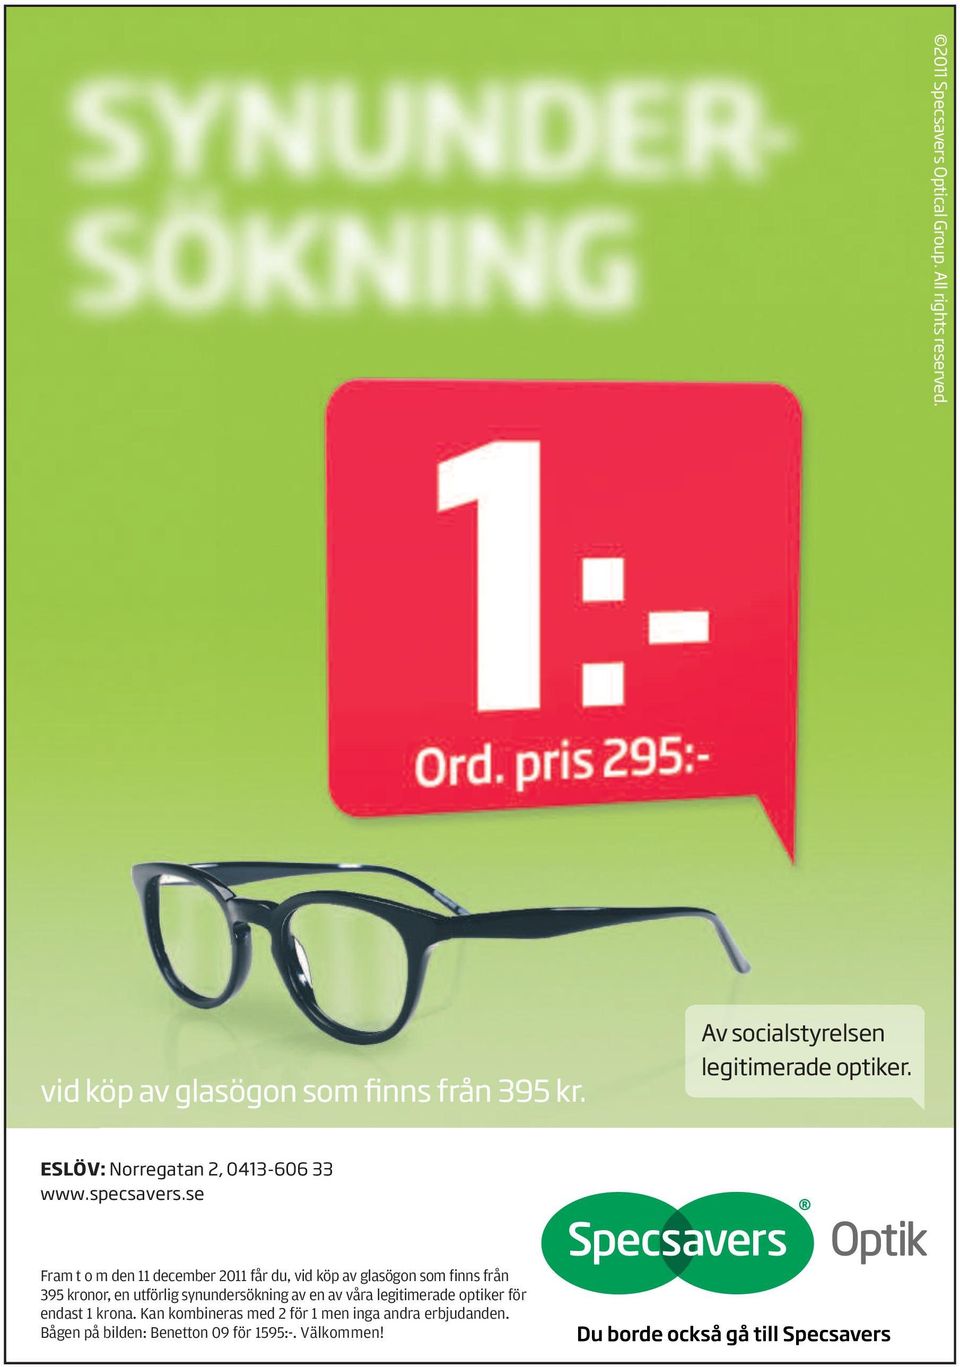 se Fram t o m den 11 december 2011 får du, vid köp av glasögon som finns från 395 kronor, en utförlig